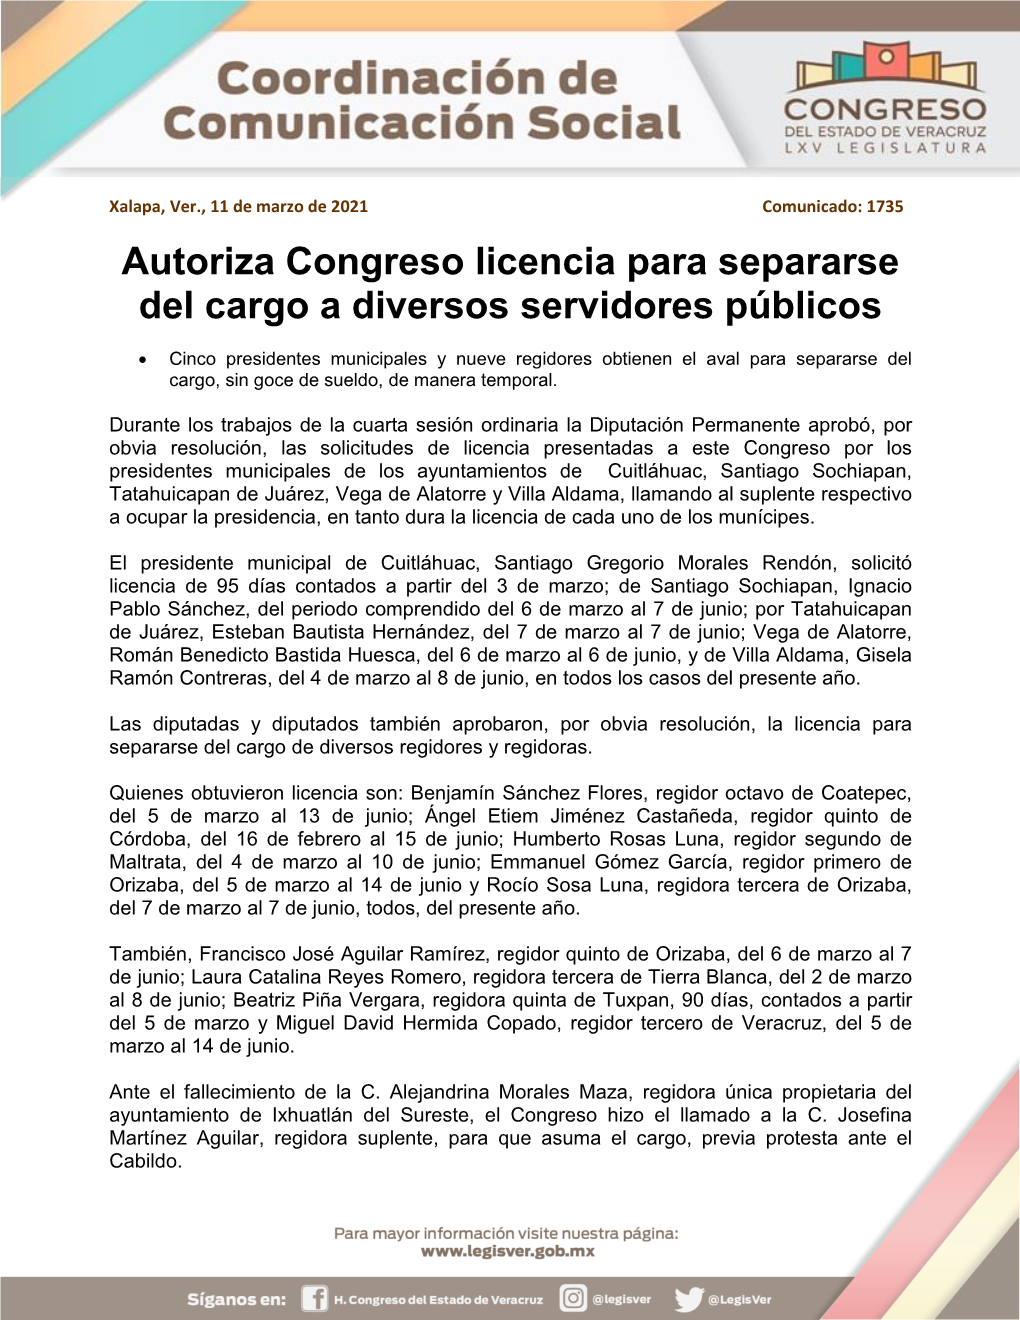 Autoriza Congreso Licencia Para Separarse Del Cargo a Diversos Servidores Públicos